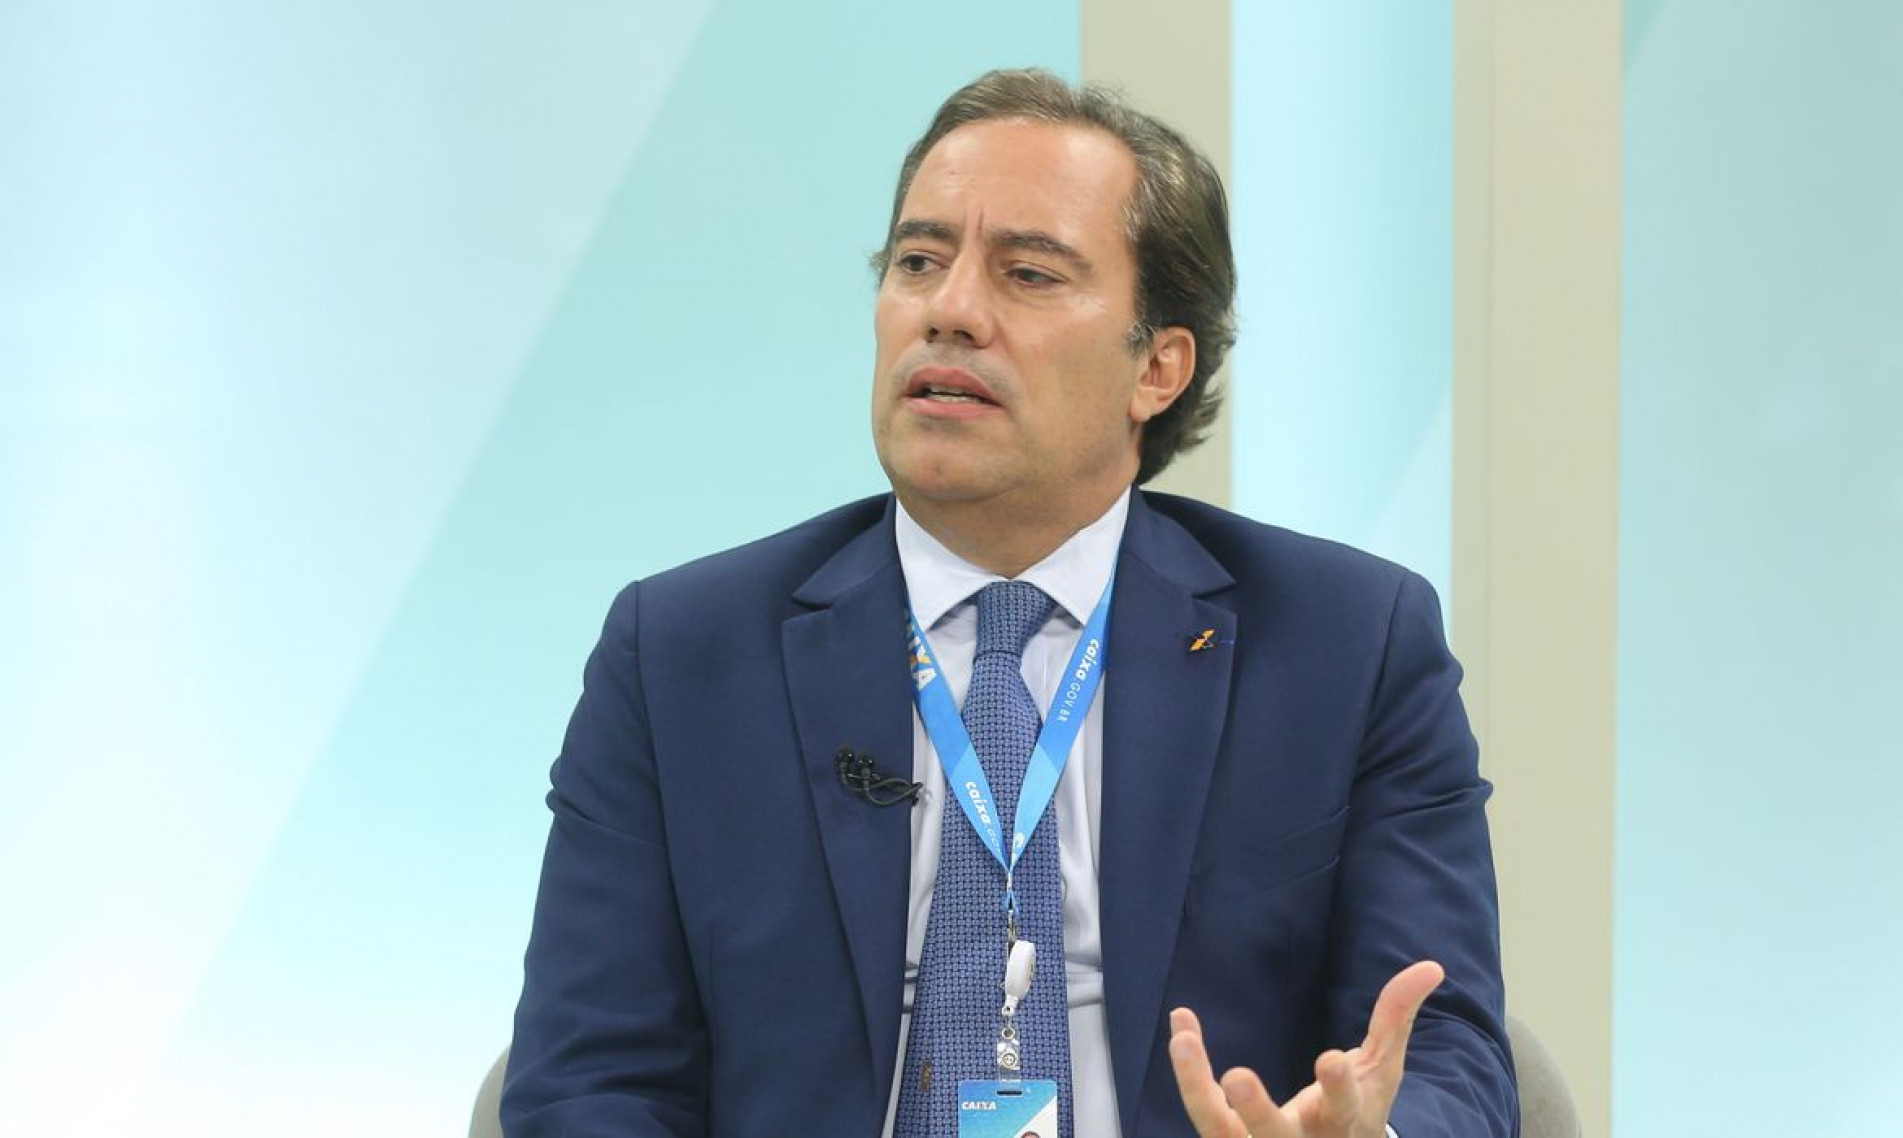 Pedro Guimarães pediu demissão do cargo após ser acusado de assédio sexual 